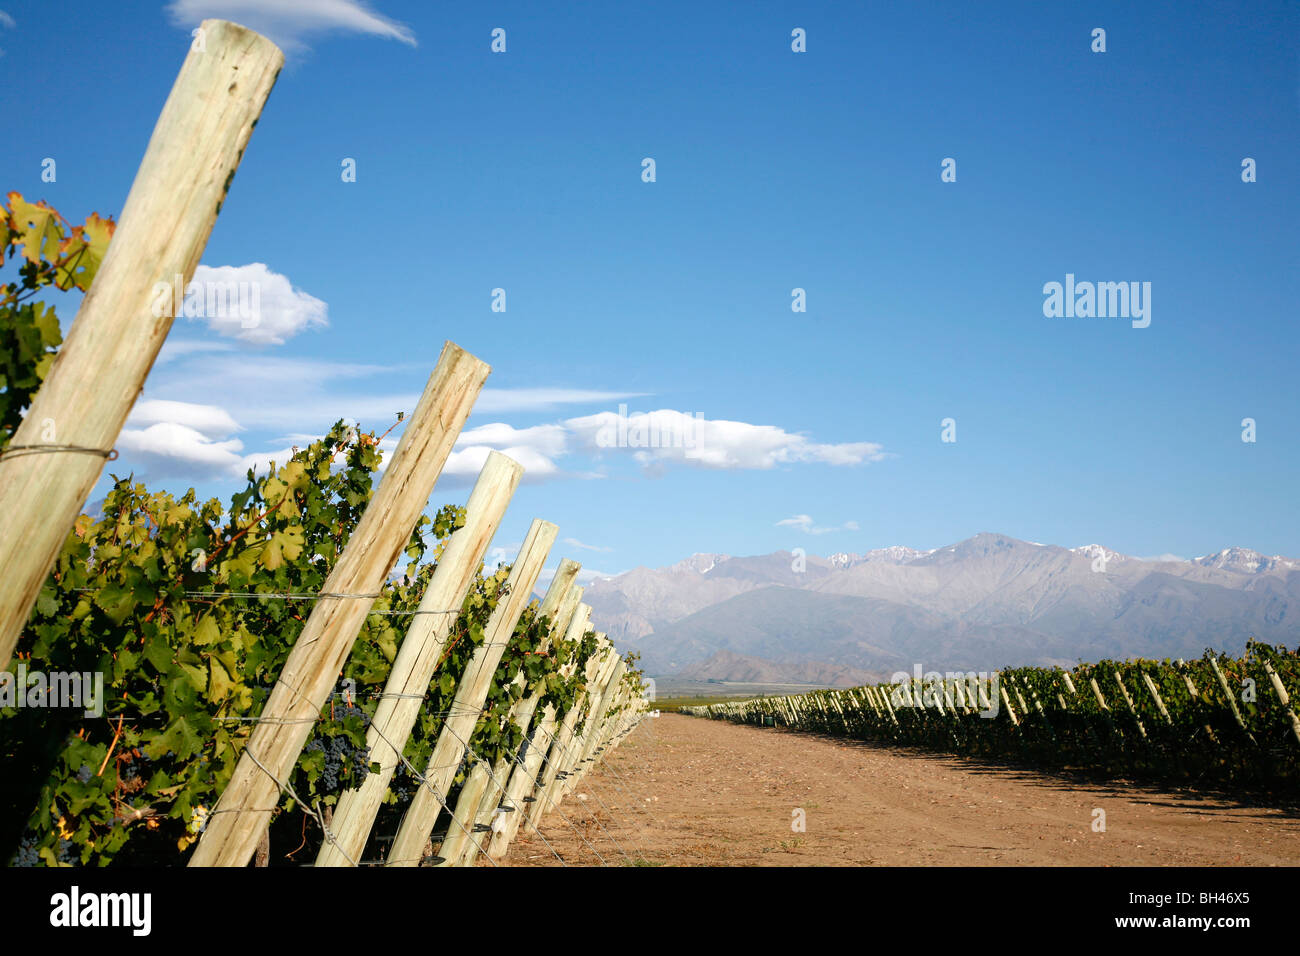 Les vignobles et les montagnes des Andes dans la région de Lujan de Cuyo, Mendoza, Argentine. Banque D'Images